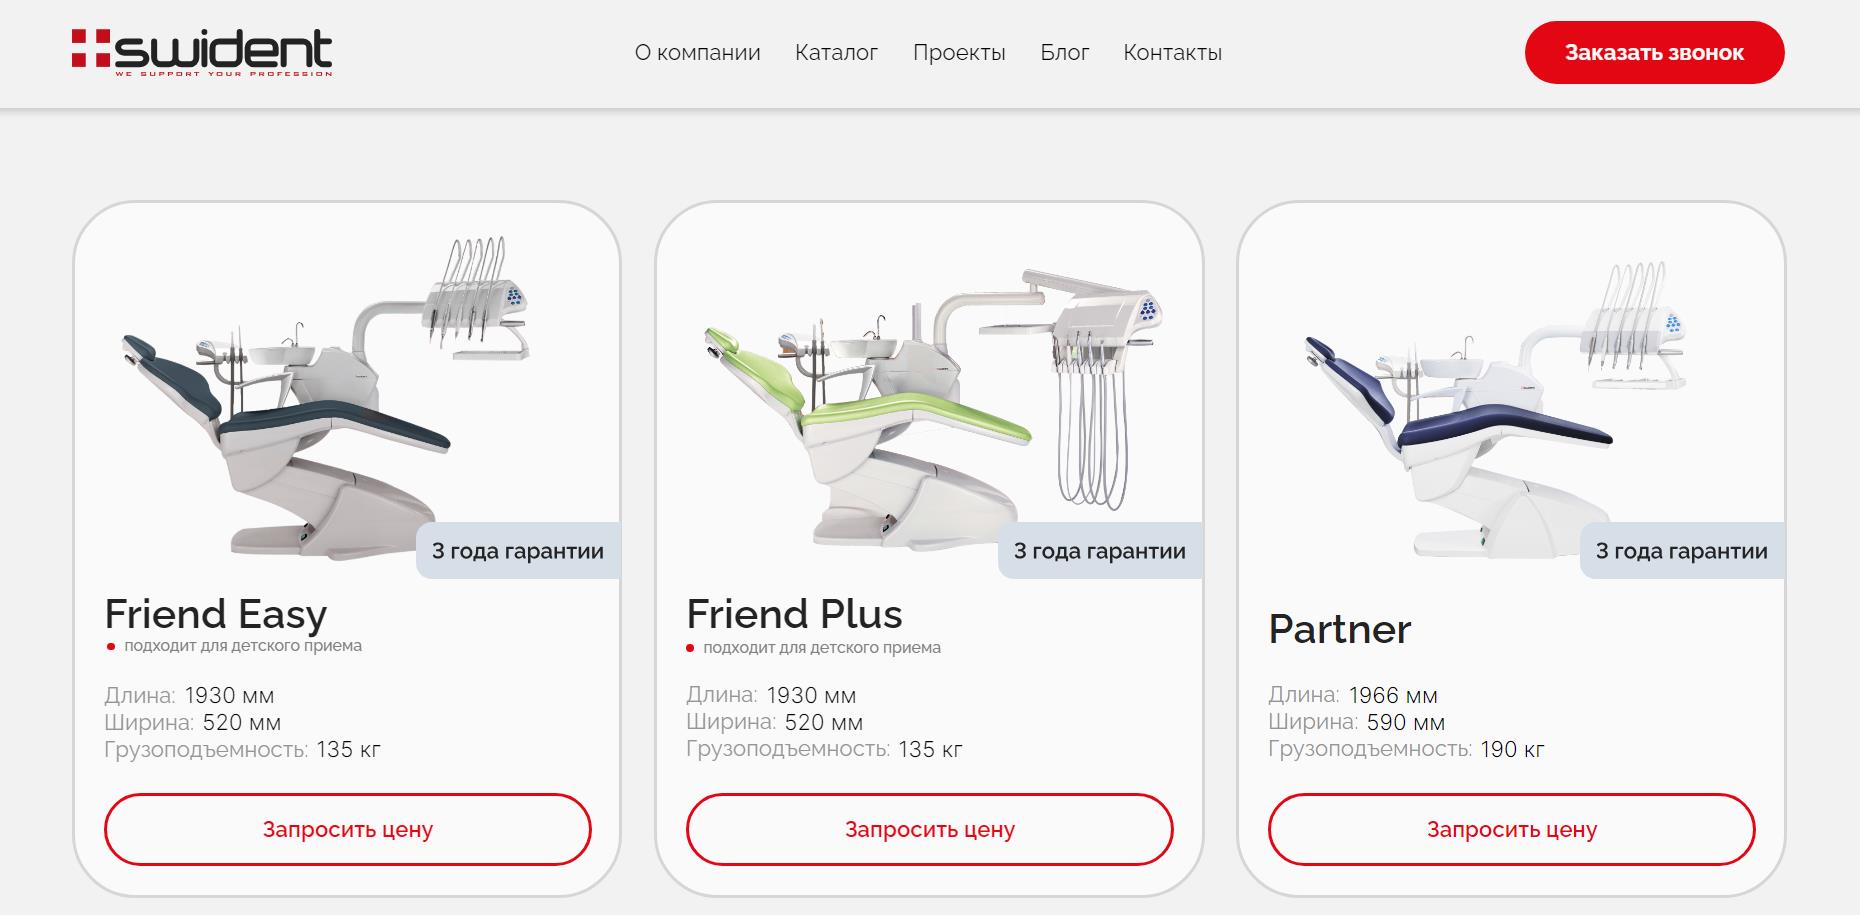 фото: ГК  «Дентекс» запустила новый сайт о стоматологических установках Swident.online